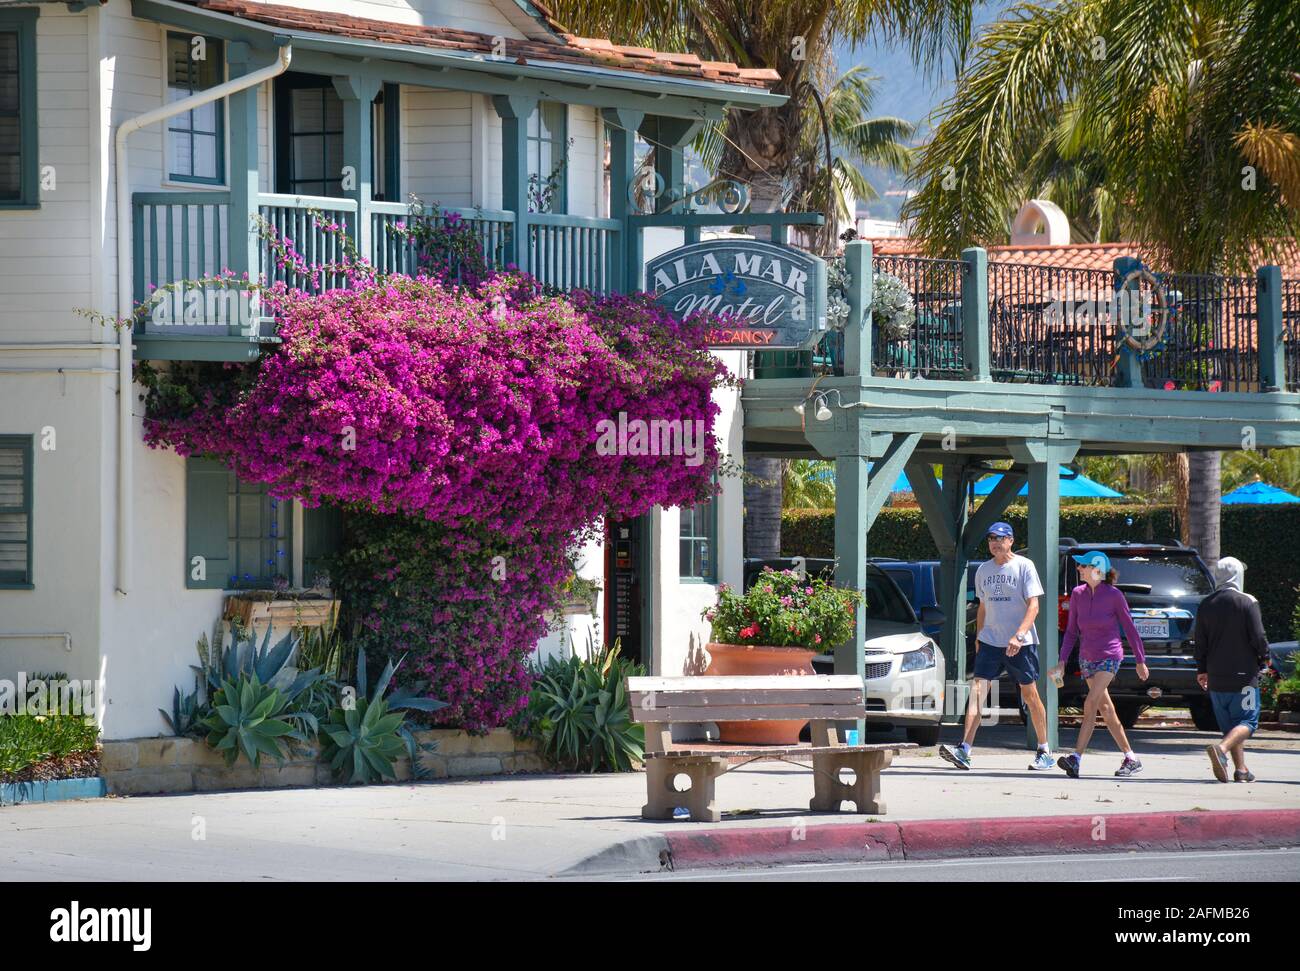 Un impressionante magenta Bougainvillea impianto all'ingresso della pittoresca ala Mar Motel sulla popolare Cabrillo Boulevard a Santa Barbara, CA, Stati Uniti d'America Foto Stock